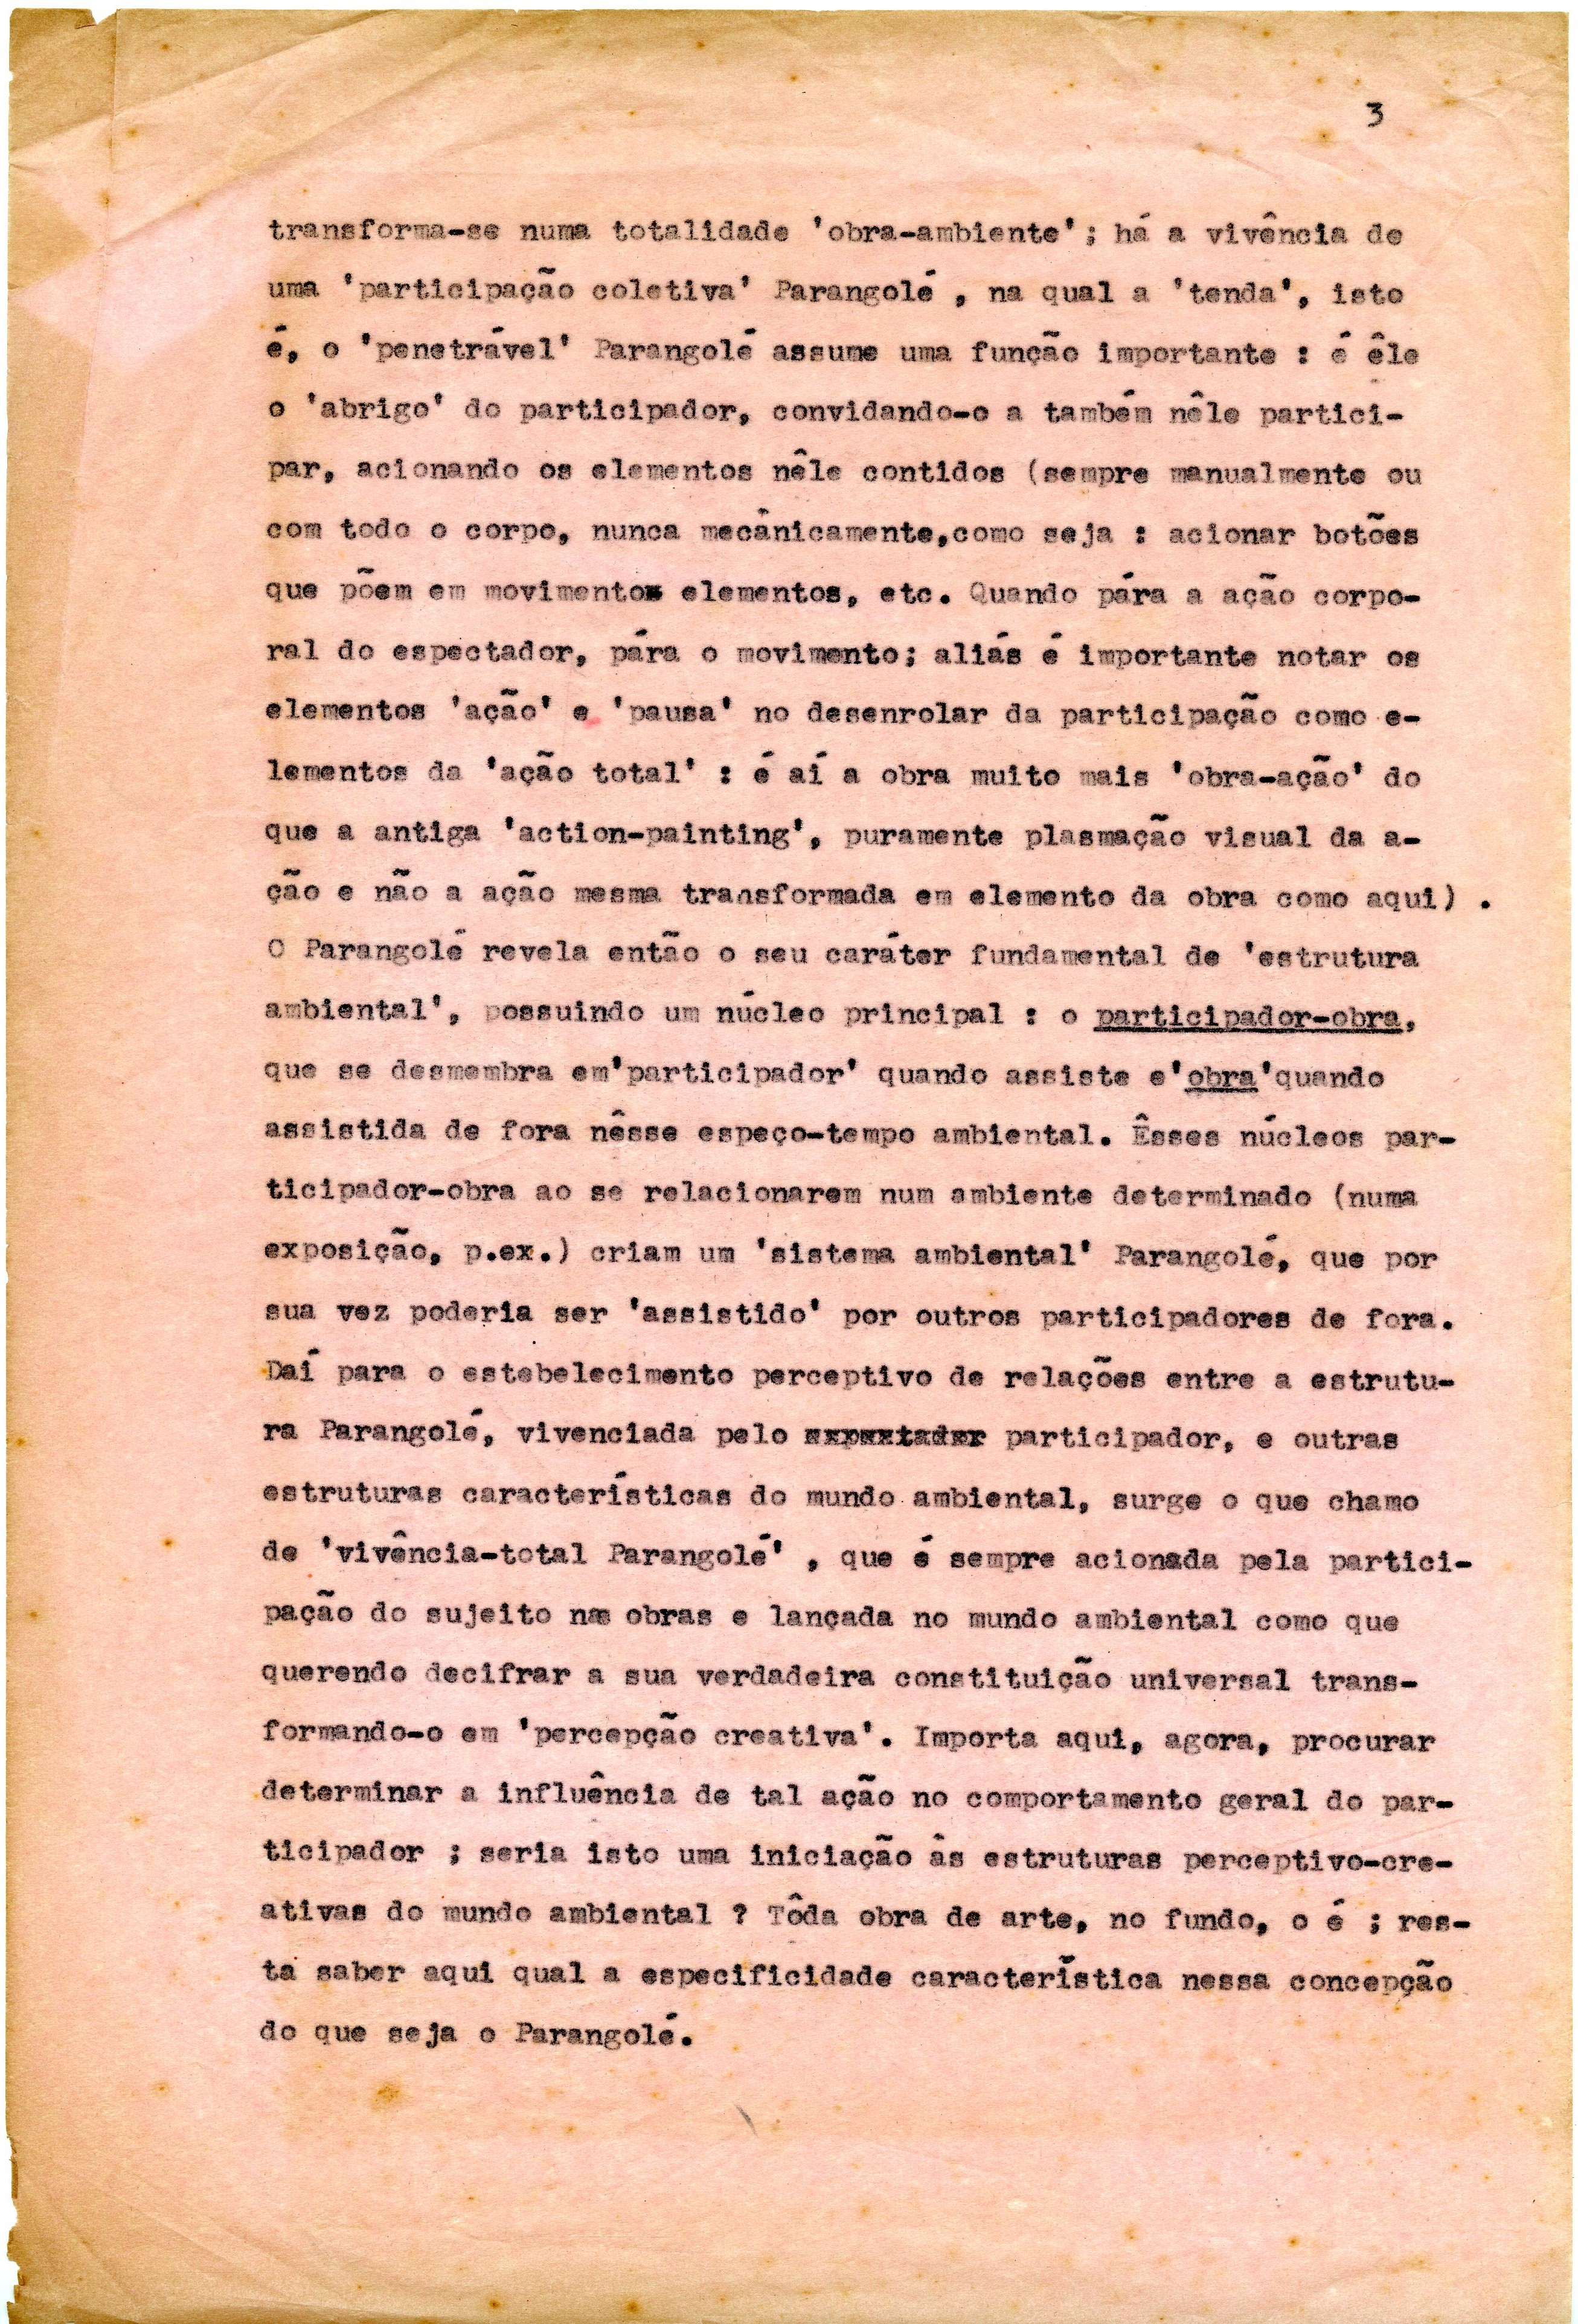 Bilhete de Hélio Oiticica a Jayme Maurício, 10 de agosto de 1965. Arquivo Jayme Maurício/ Acervo IMS